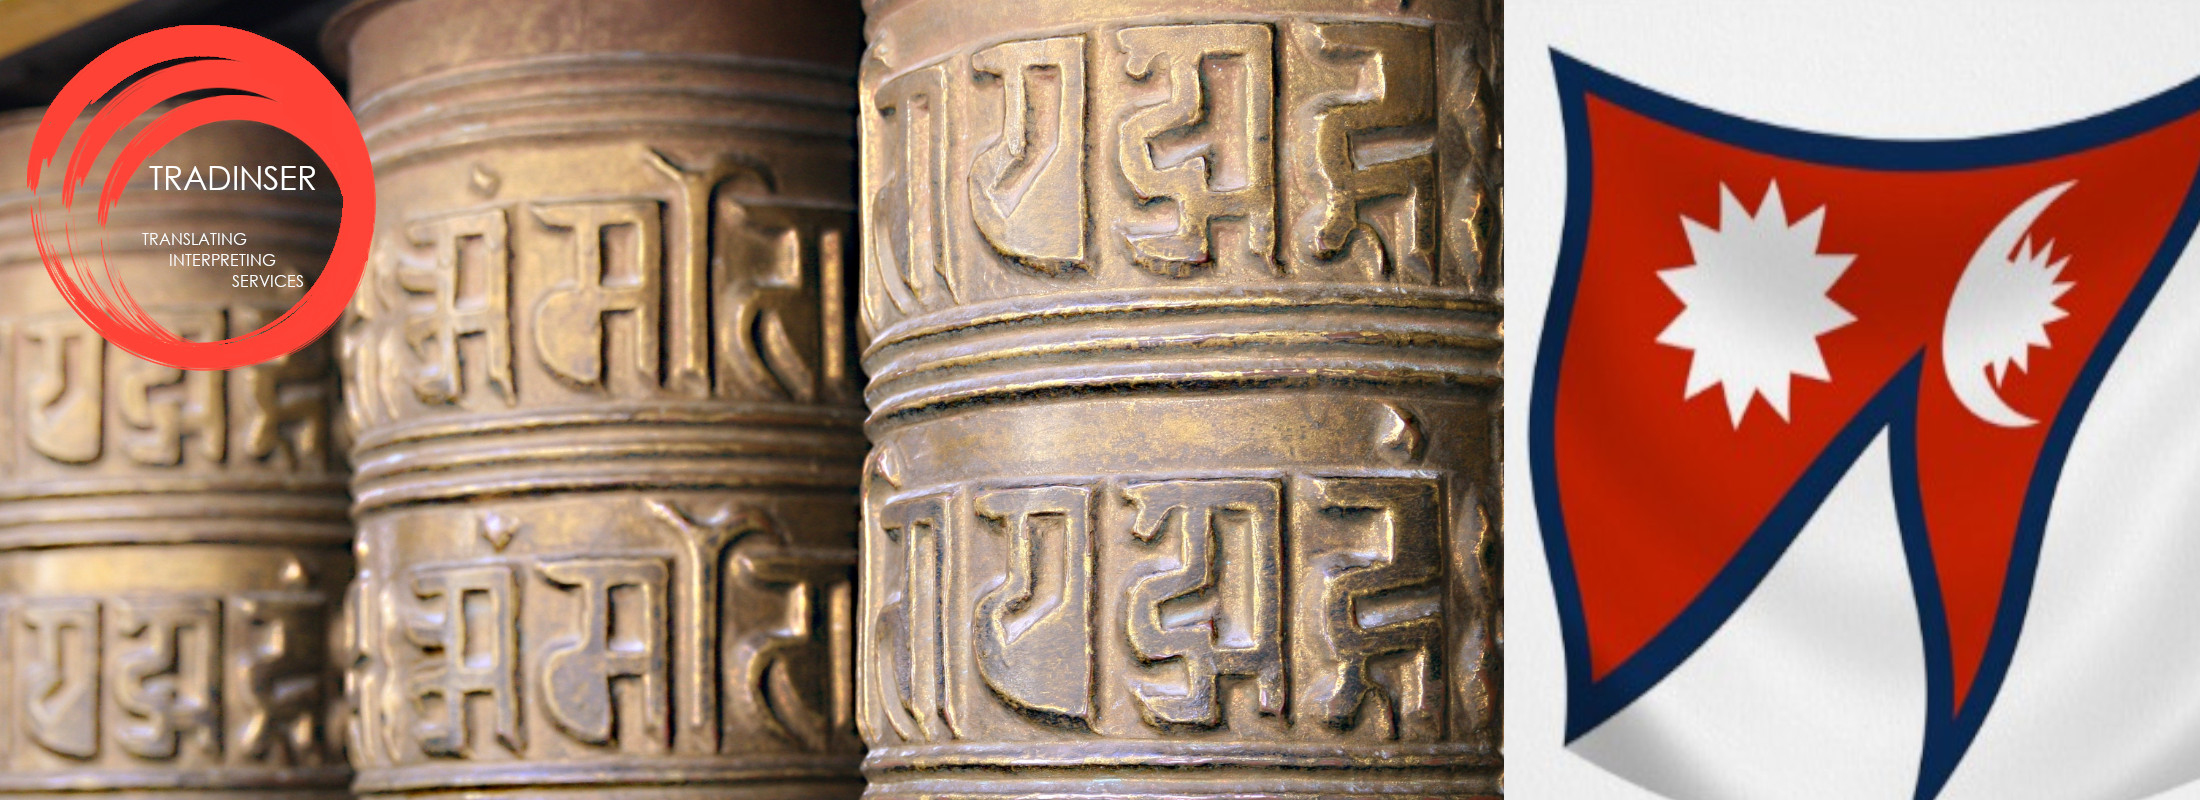 Traducciones de nepalí TRADINSER - 91 025 93 20